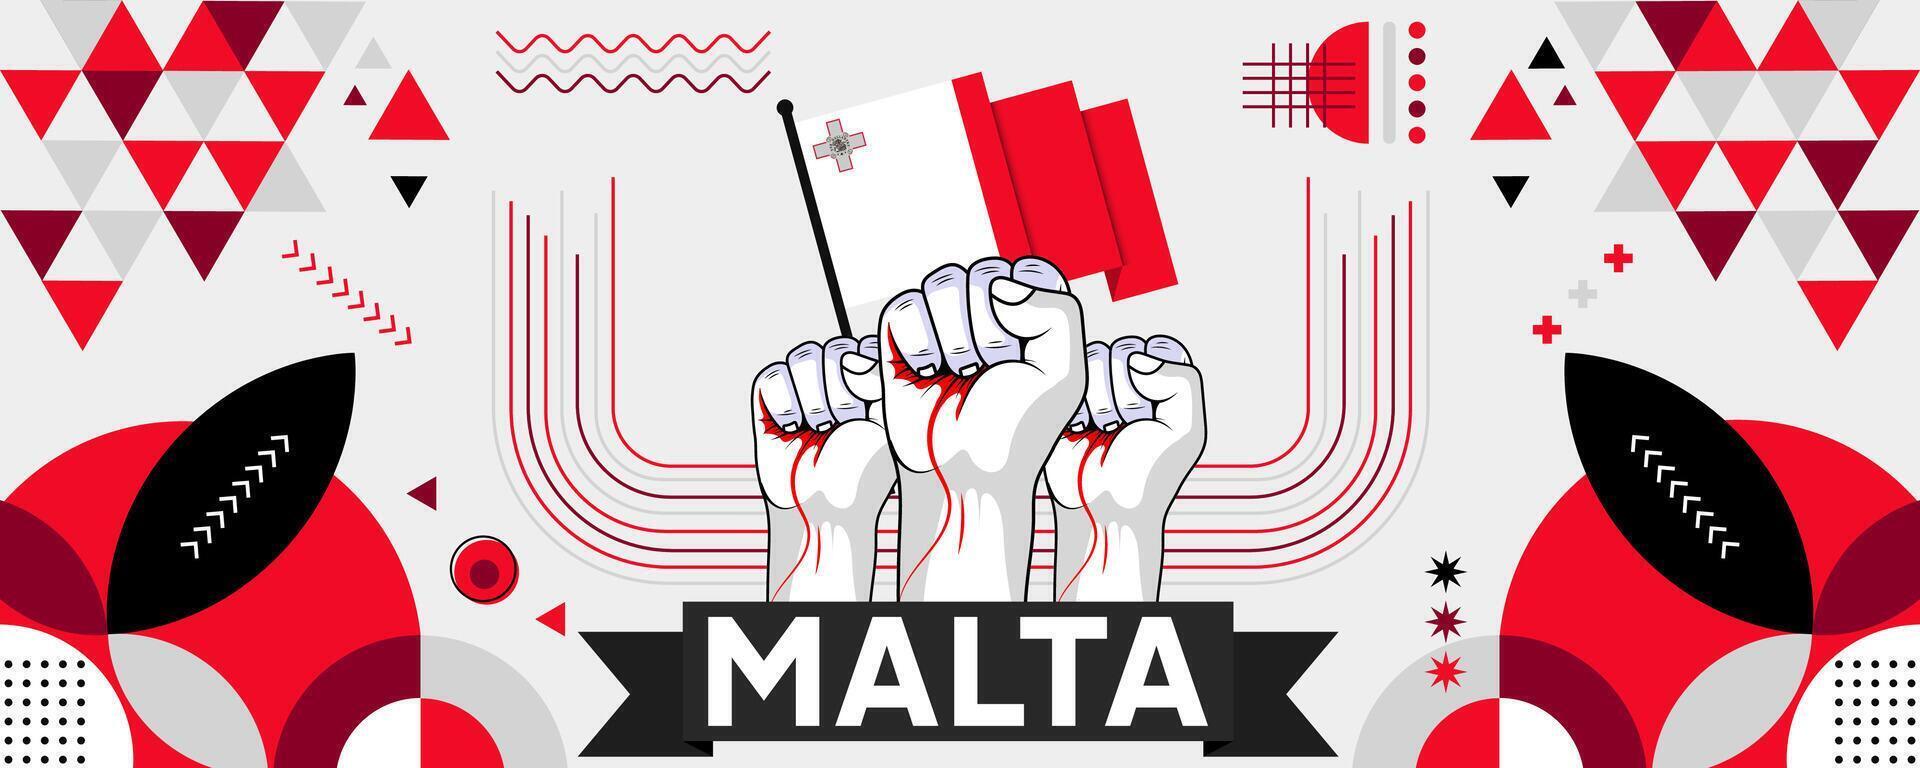 Malta nacional ou independência dia bandeira para país celebração. bandeira do Malta com elevado punhos. moderno retro Projeto com typorgaphy abstrato geométrico ícones. vetor ilustração.